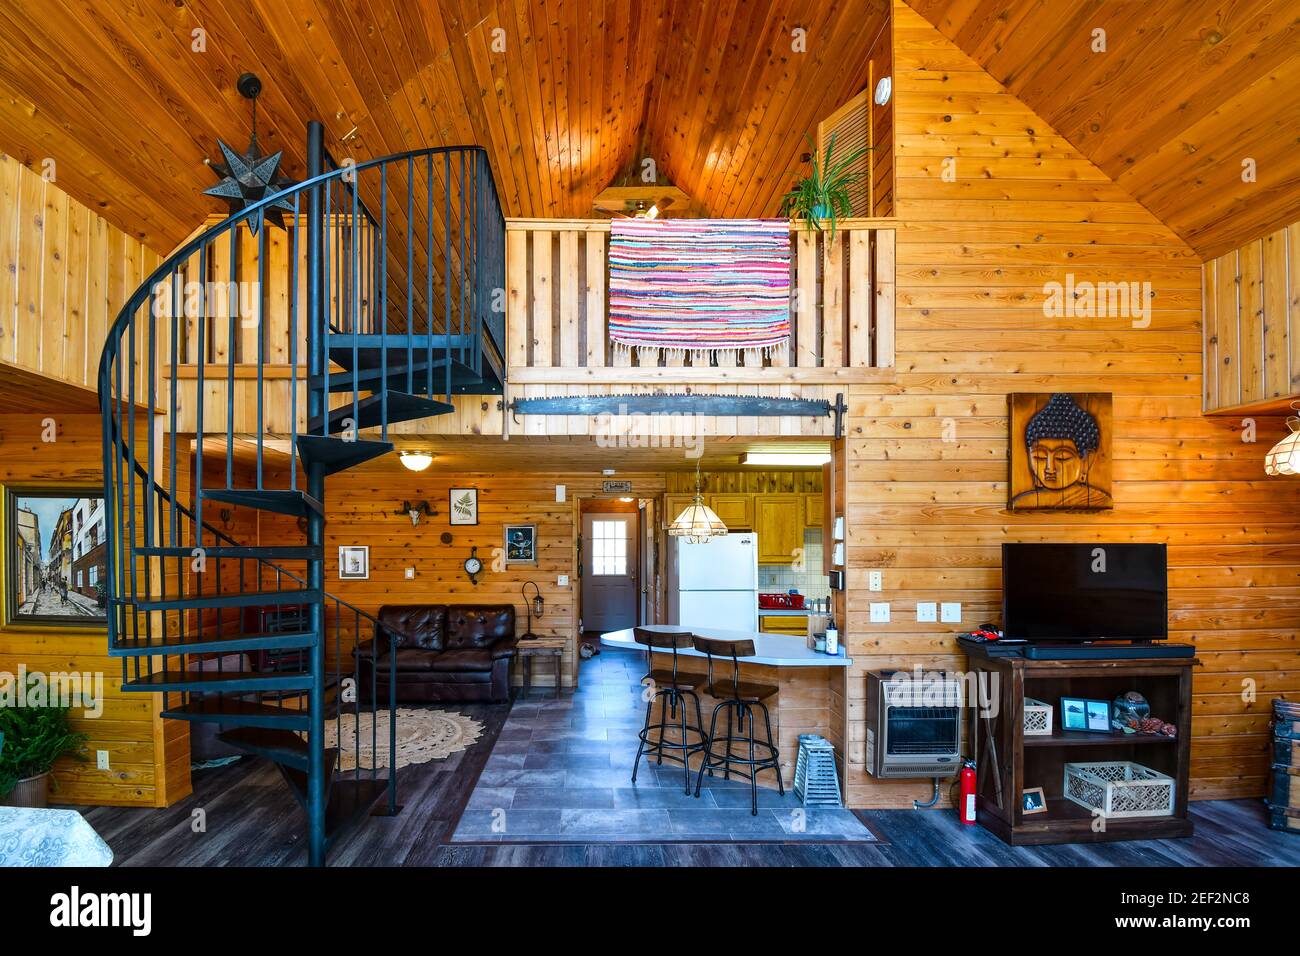 Vue intérieure d'une maison rustique haut de gamme en rondins avec planches en bois de cèdre, loft et escalier en colimaçon. Banque D'Images